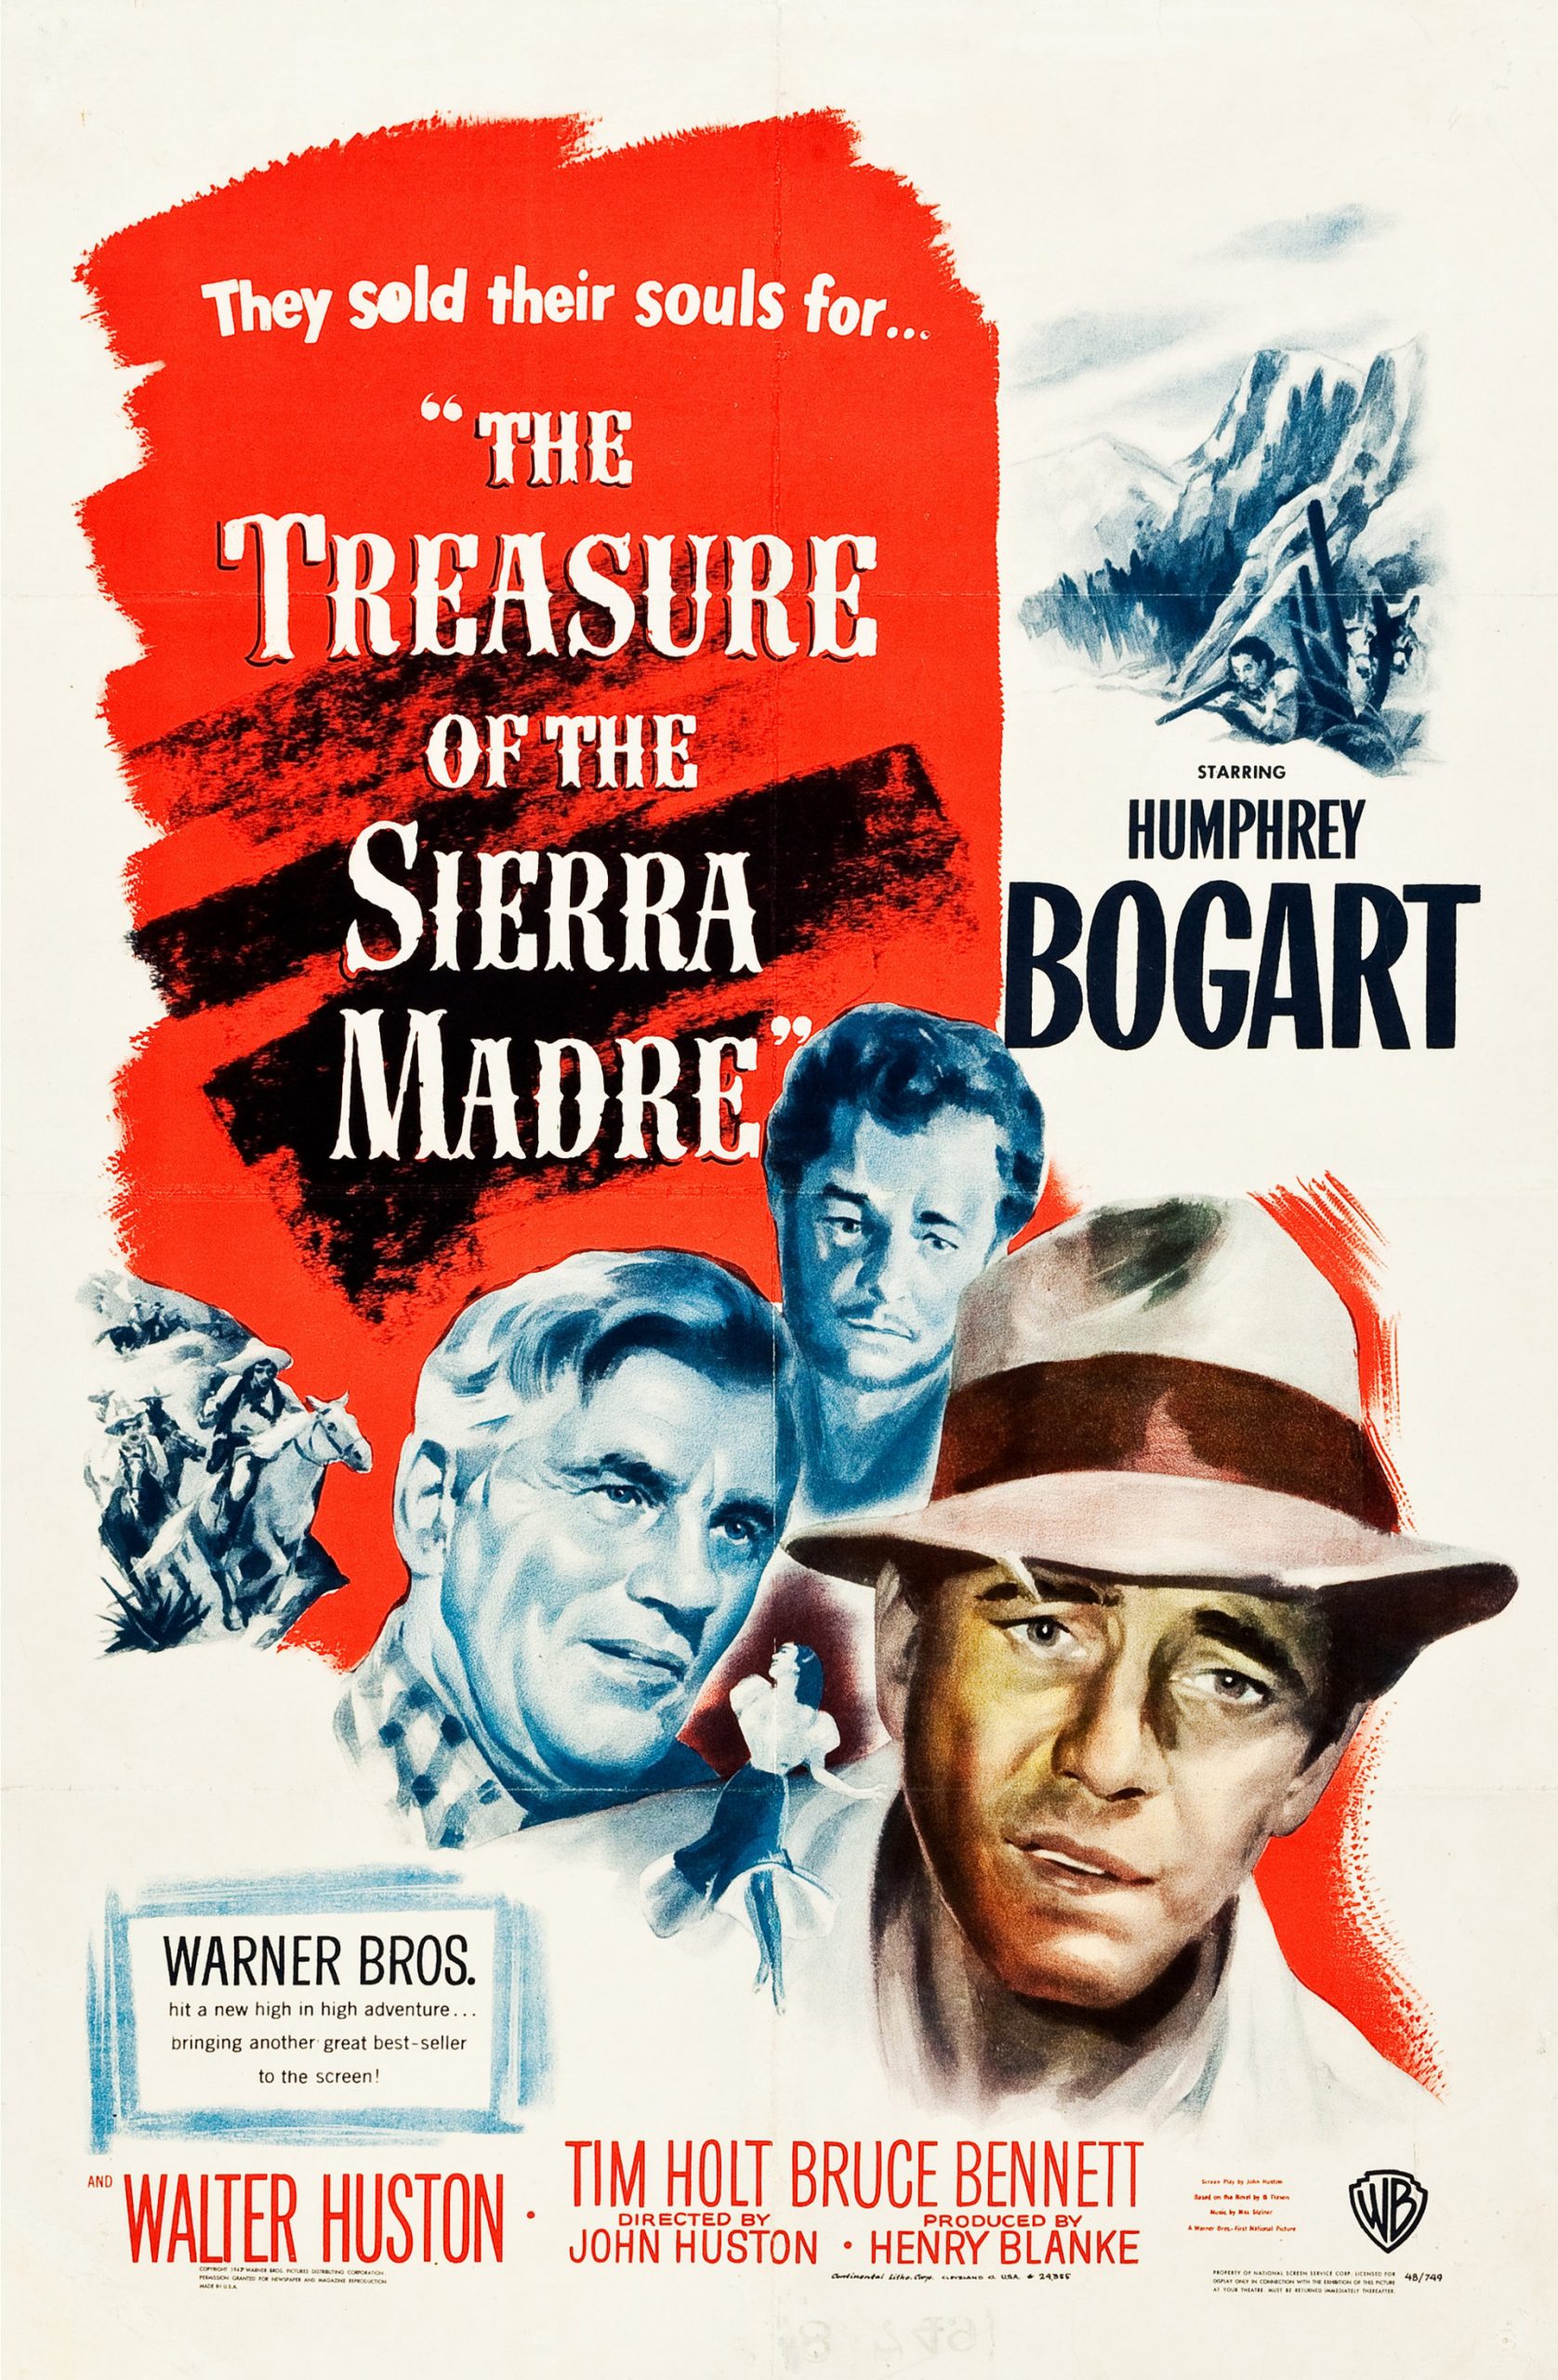 THE TREASURE OF THE SIERRA MADRE (1948) ล่าขุมทรัพย์เซียร่า มาเดร พากย์ไทย